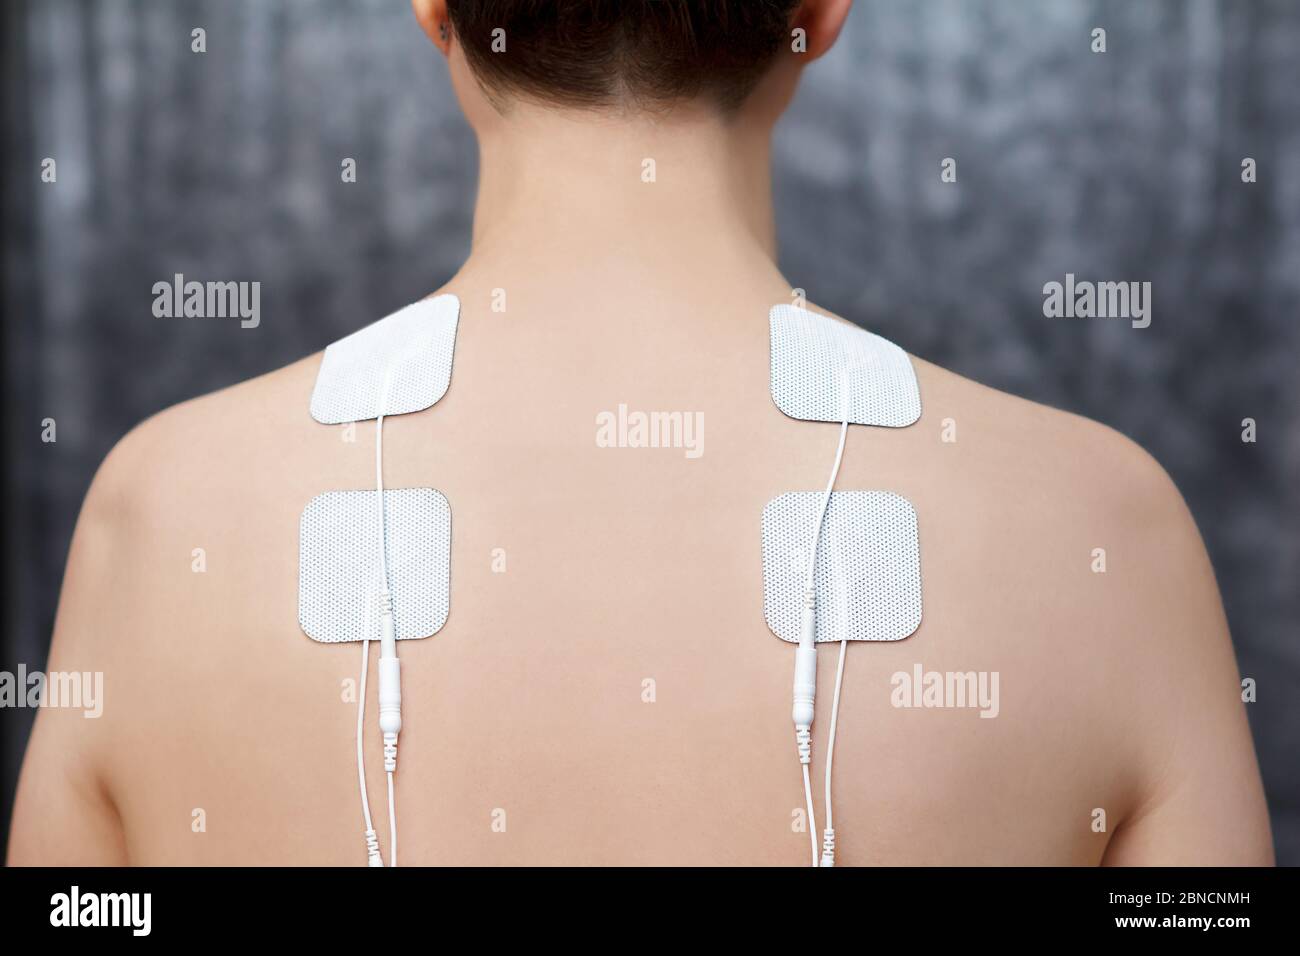 TENS-Therapie bei Fibromyalgie-Behandlung - Elektroden auf den Schultern der weiblichen Patientin. Stockfoto